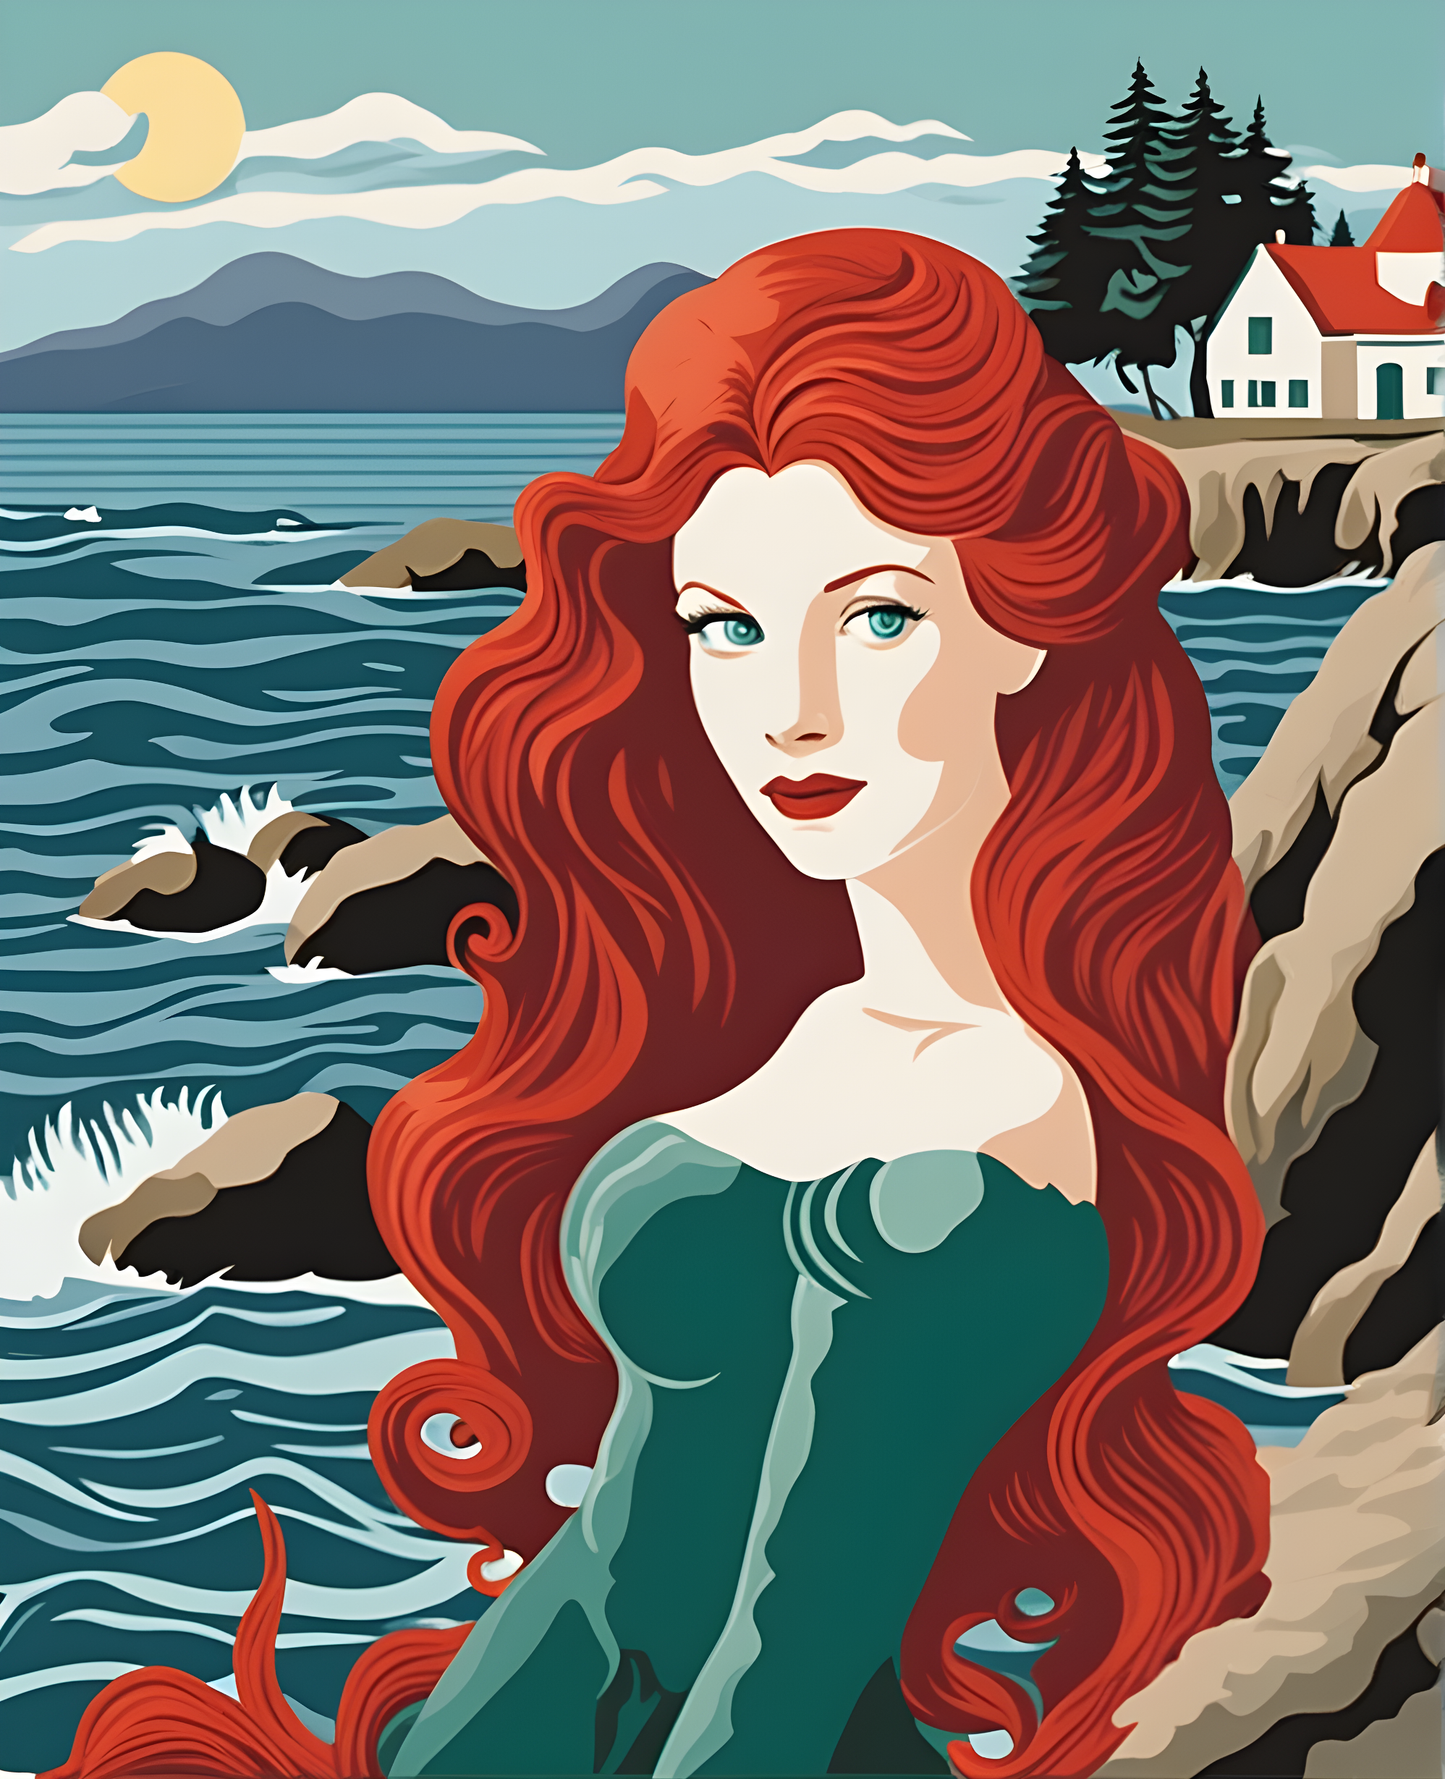 Redhead Mermaid (4) - Van-Go Paint-By-Number Kit